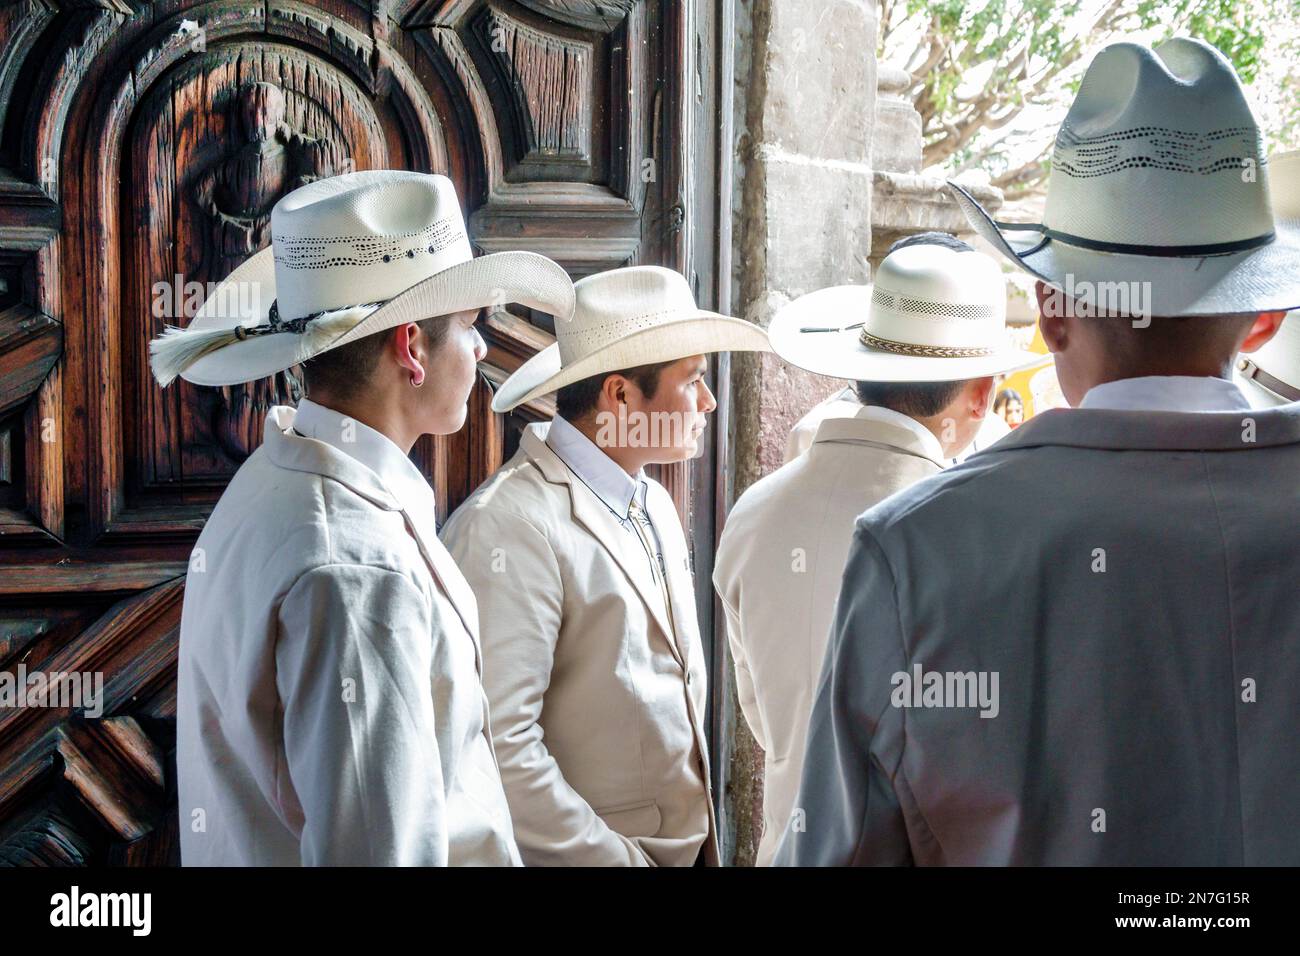 San Miguel de Allende Guanajuato Messico, Historico centro storico centrale zona Centro, festa a tema gli ospiti che indossano cappello cowboy sombrero sombreros, qu Foto Stock